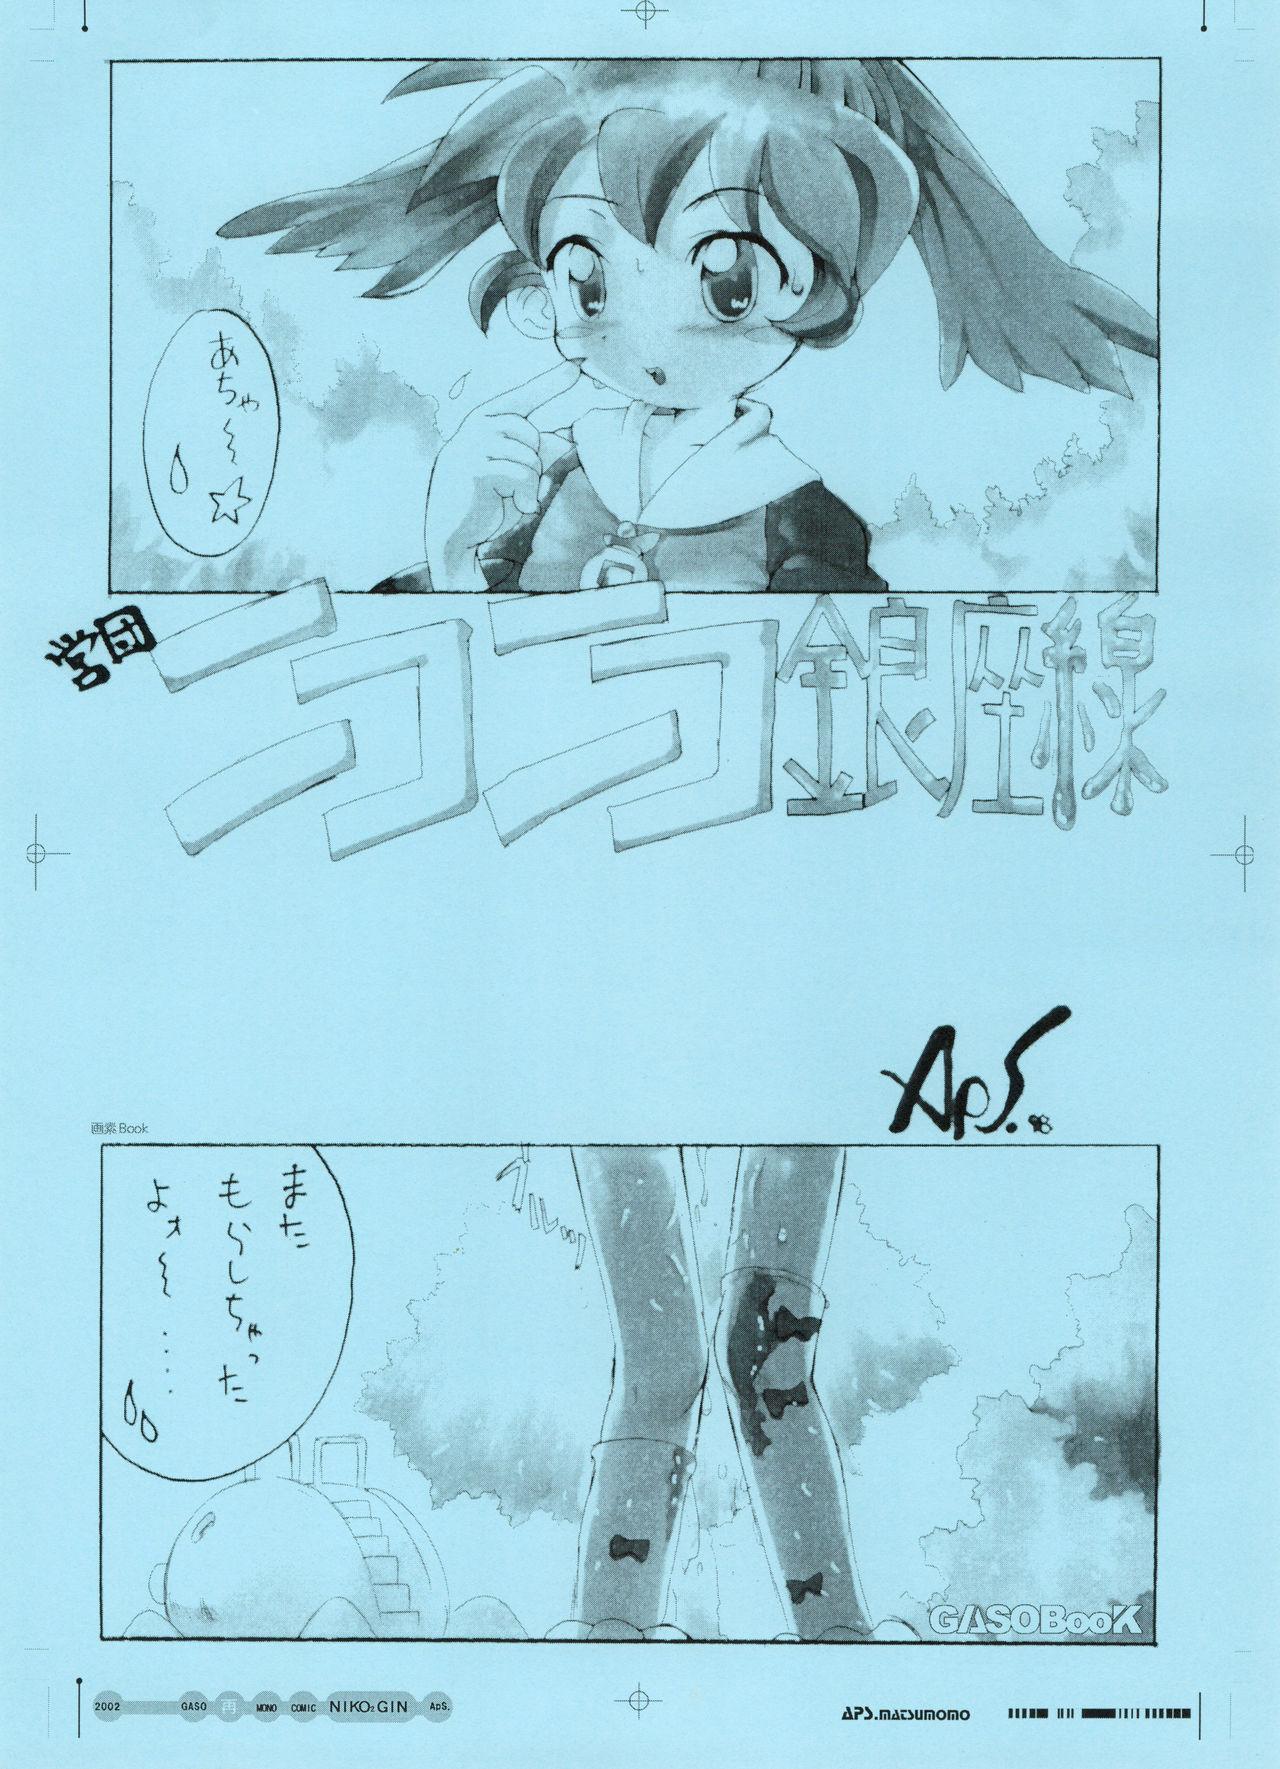 GASOBooK Genkou Youshi Kidz AnimeTronica'Z -0208 8